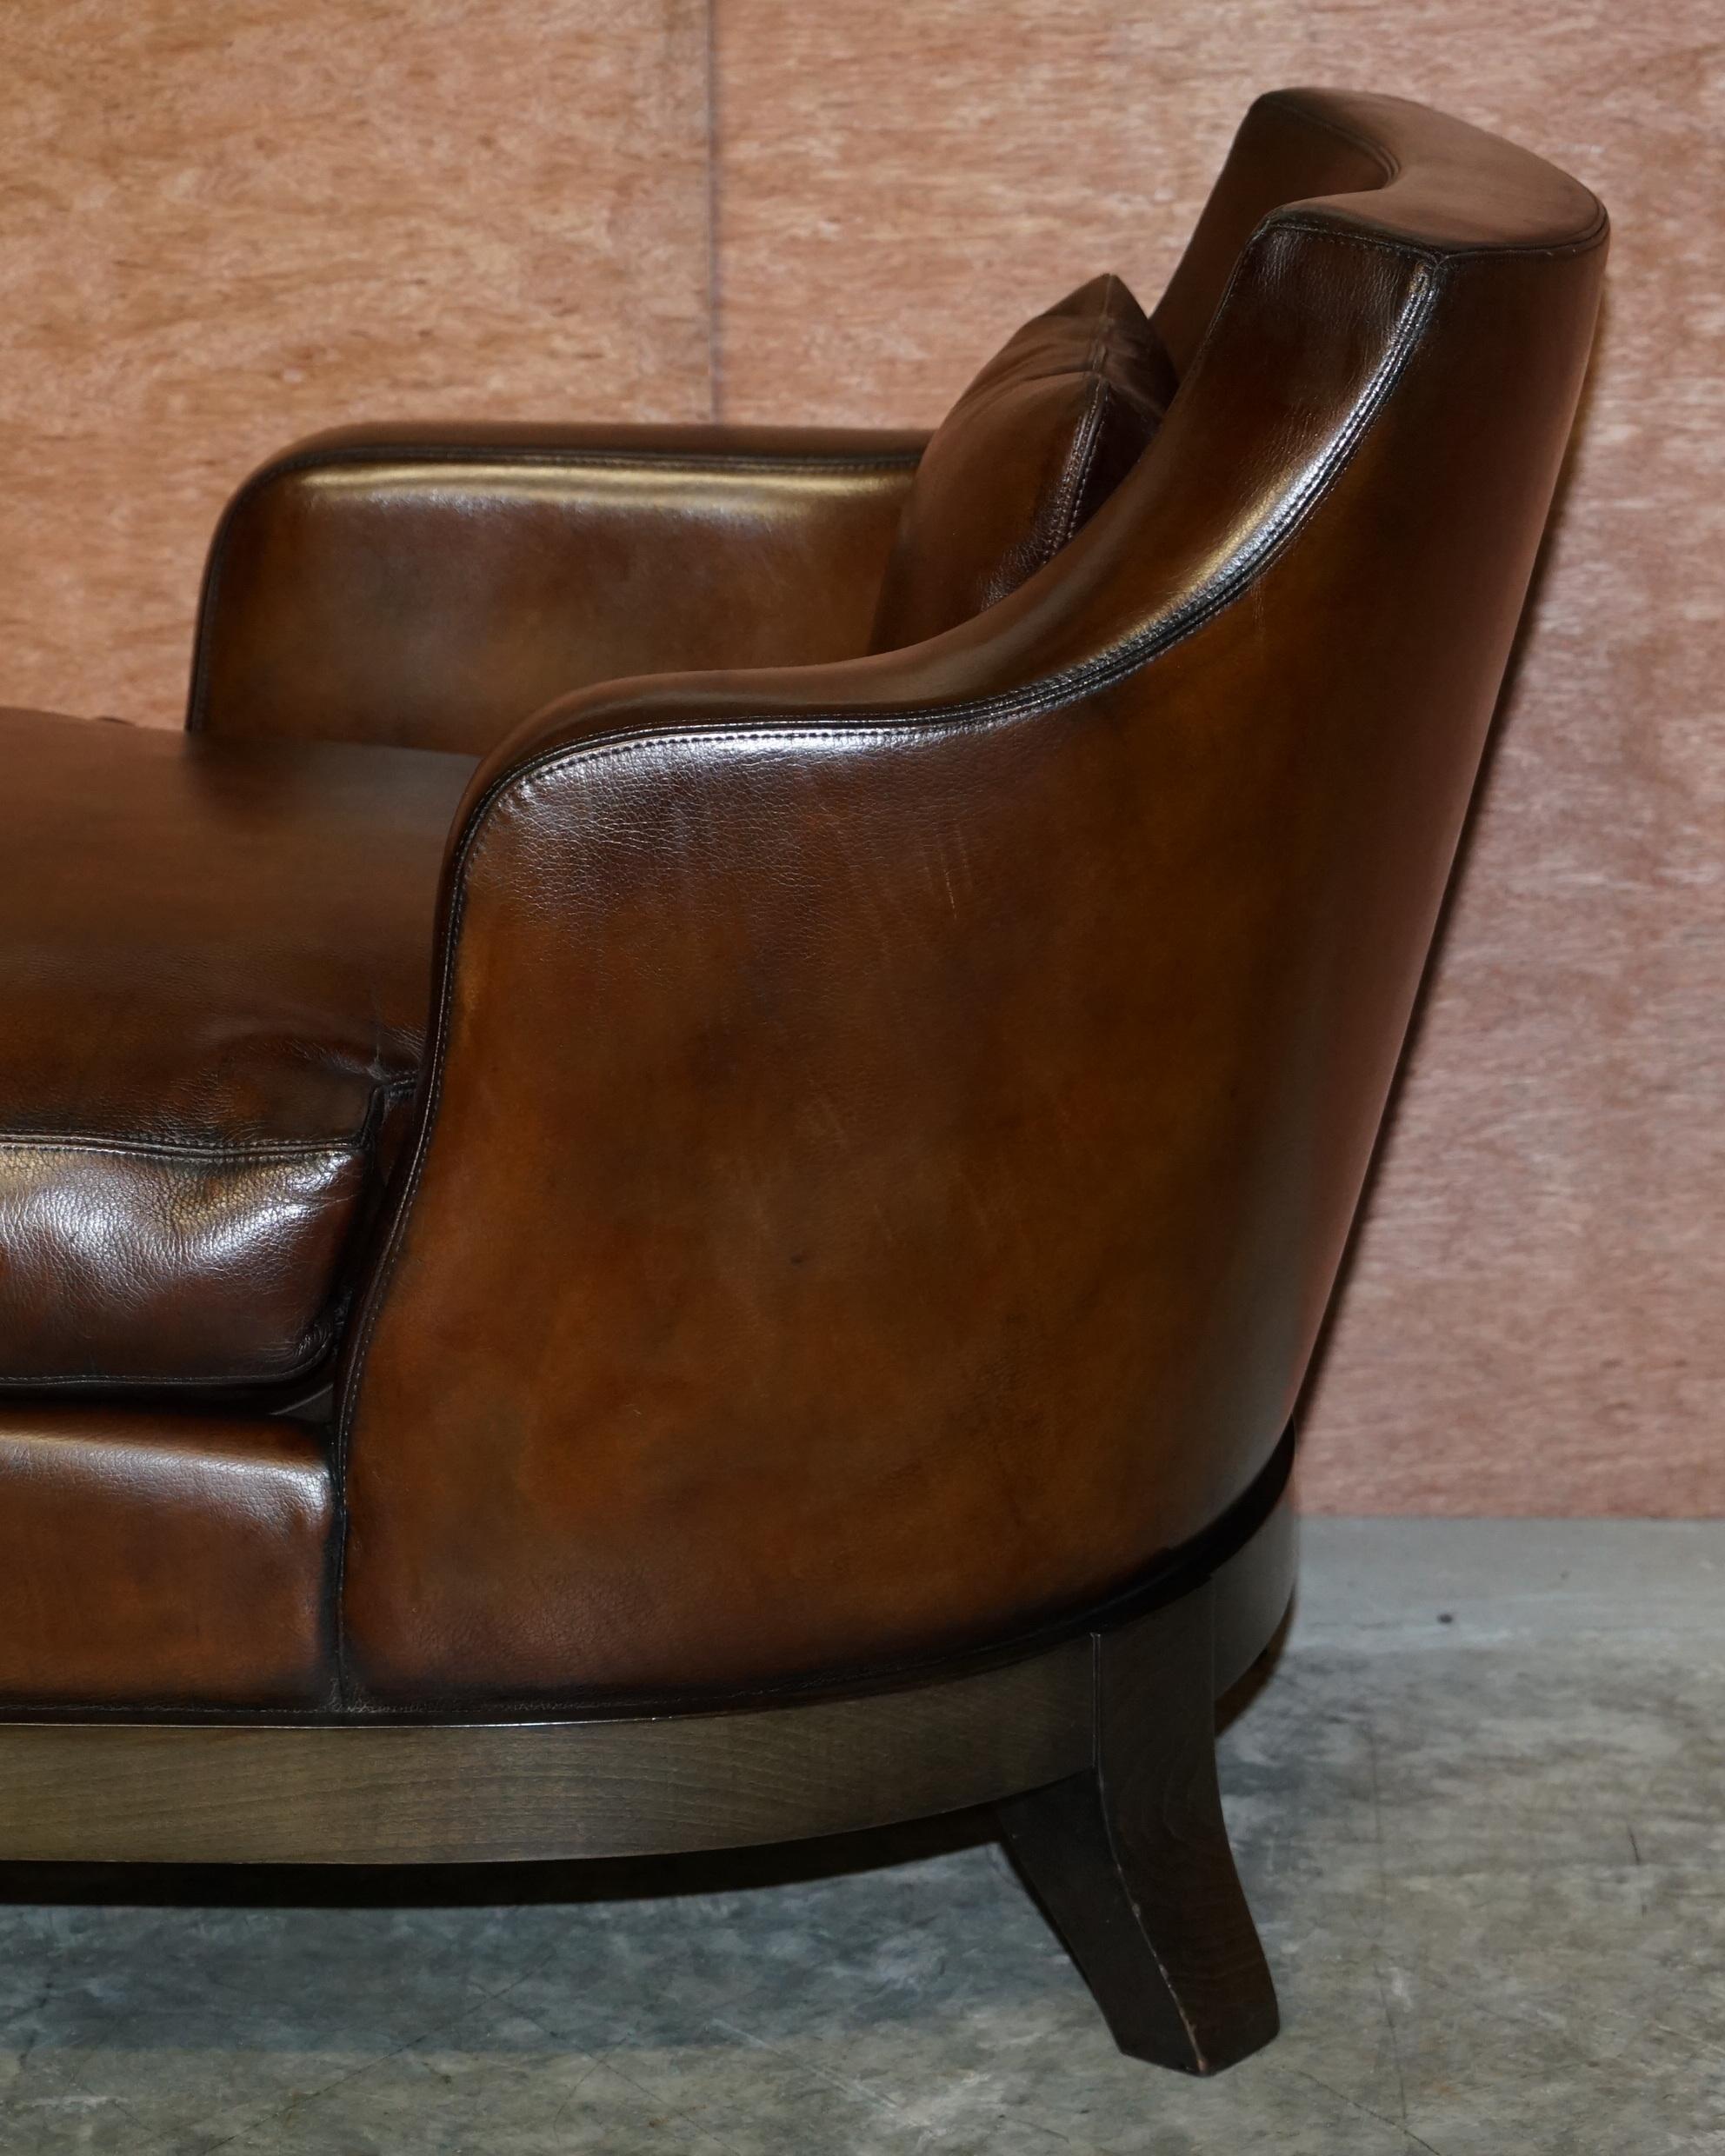 Rare Restored Promemoria Gioconda Italian Brown Leather Chaise Lounge Daybed For Sale 2